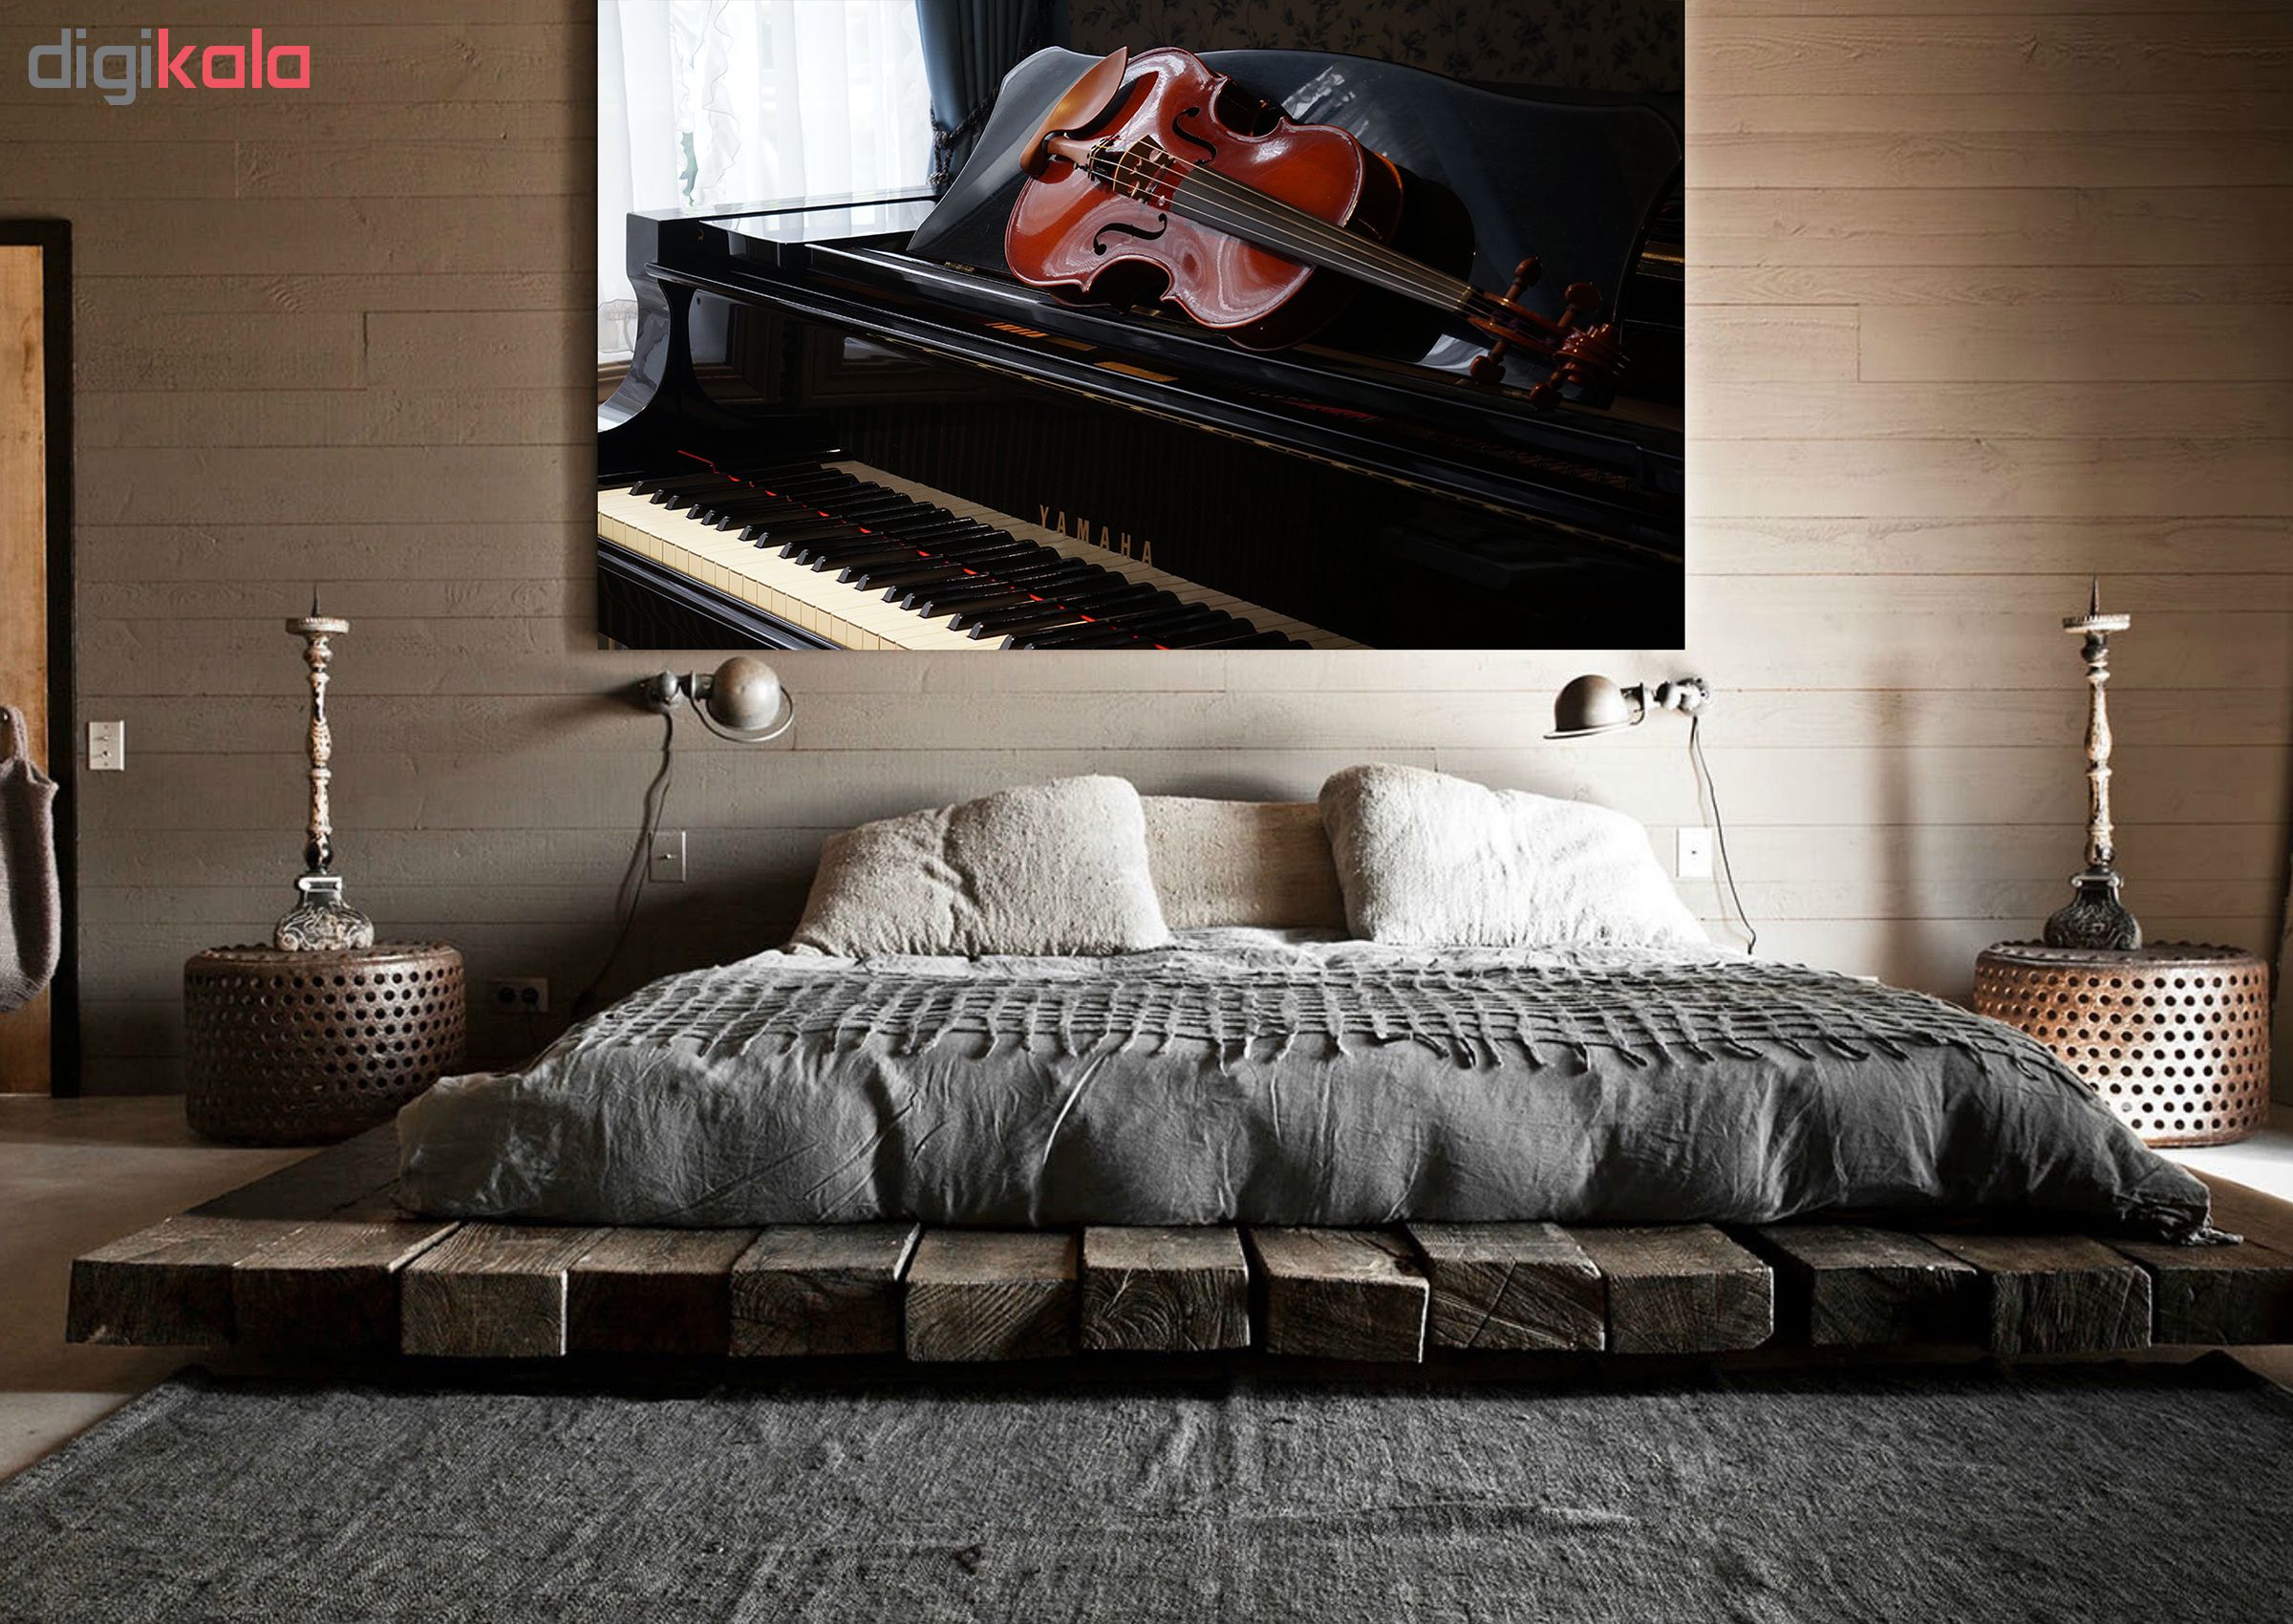 تابلو شاسی طرح زیباترین عکس های جهان-ویولن و پیانو کد 114